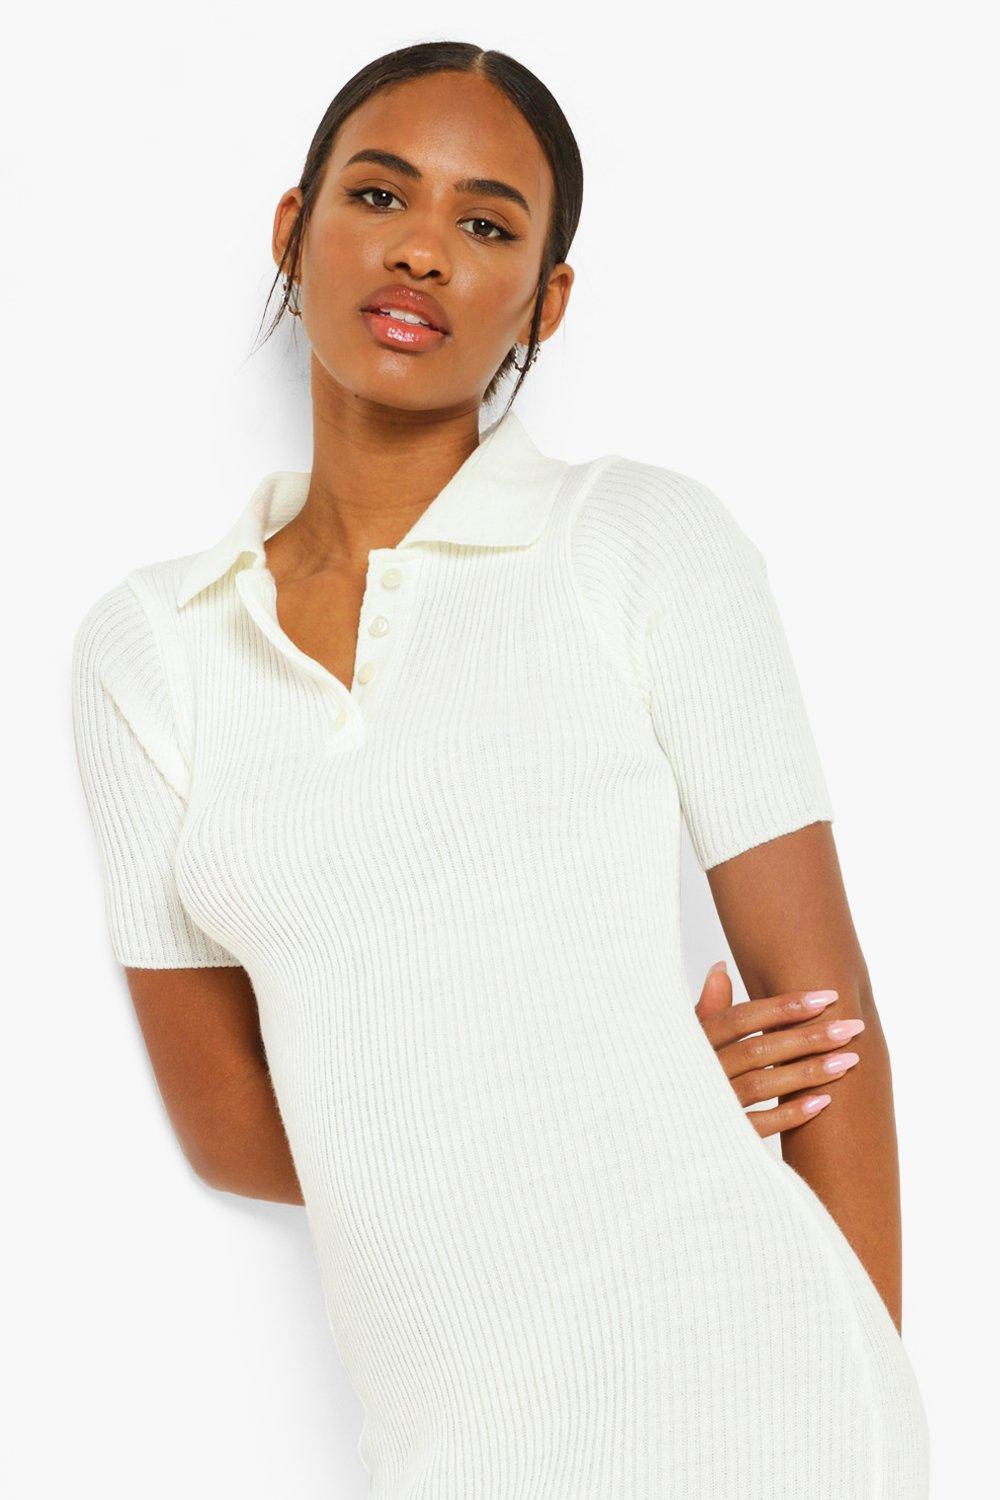 Women's Short Sleeve Polo Shirt Dress ...